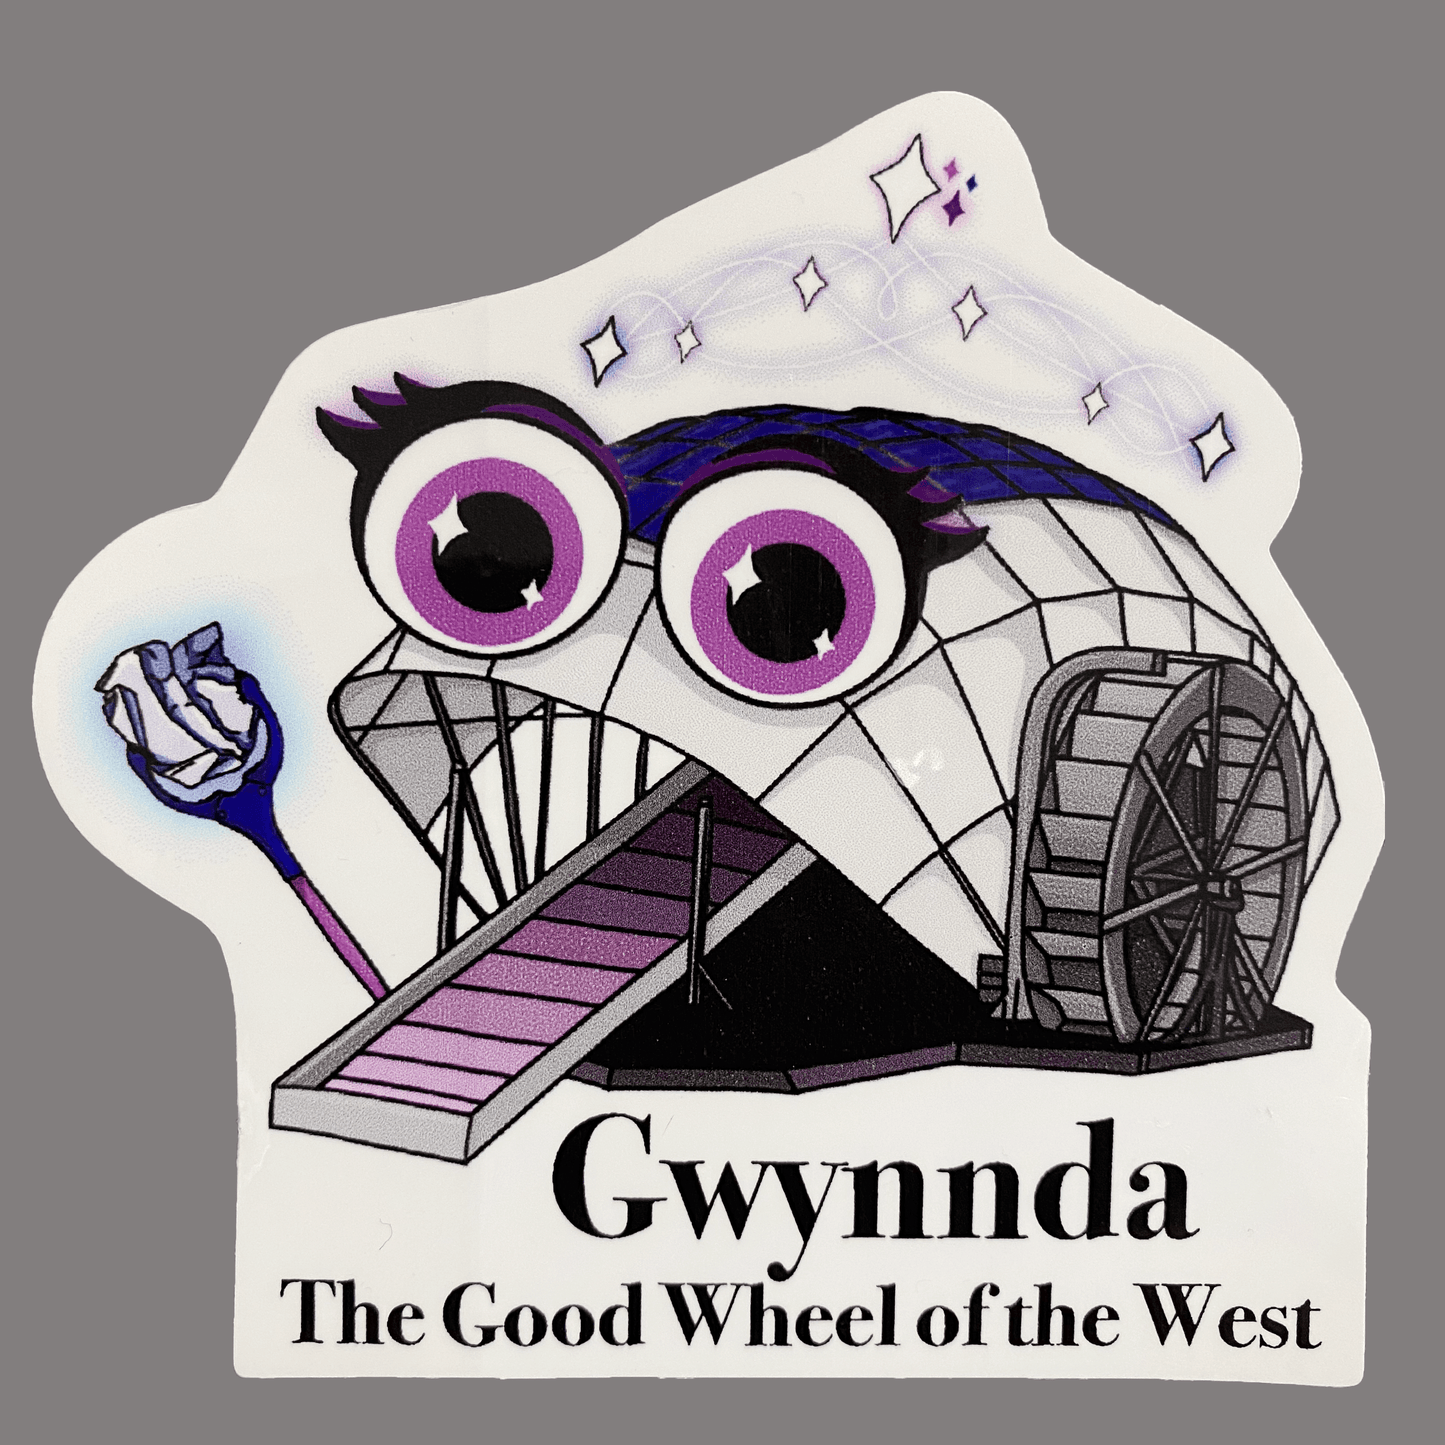 Gwynnda The Good Wheel Of The West / Sticker - Route One Apparel